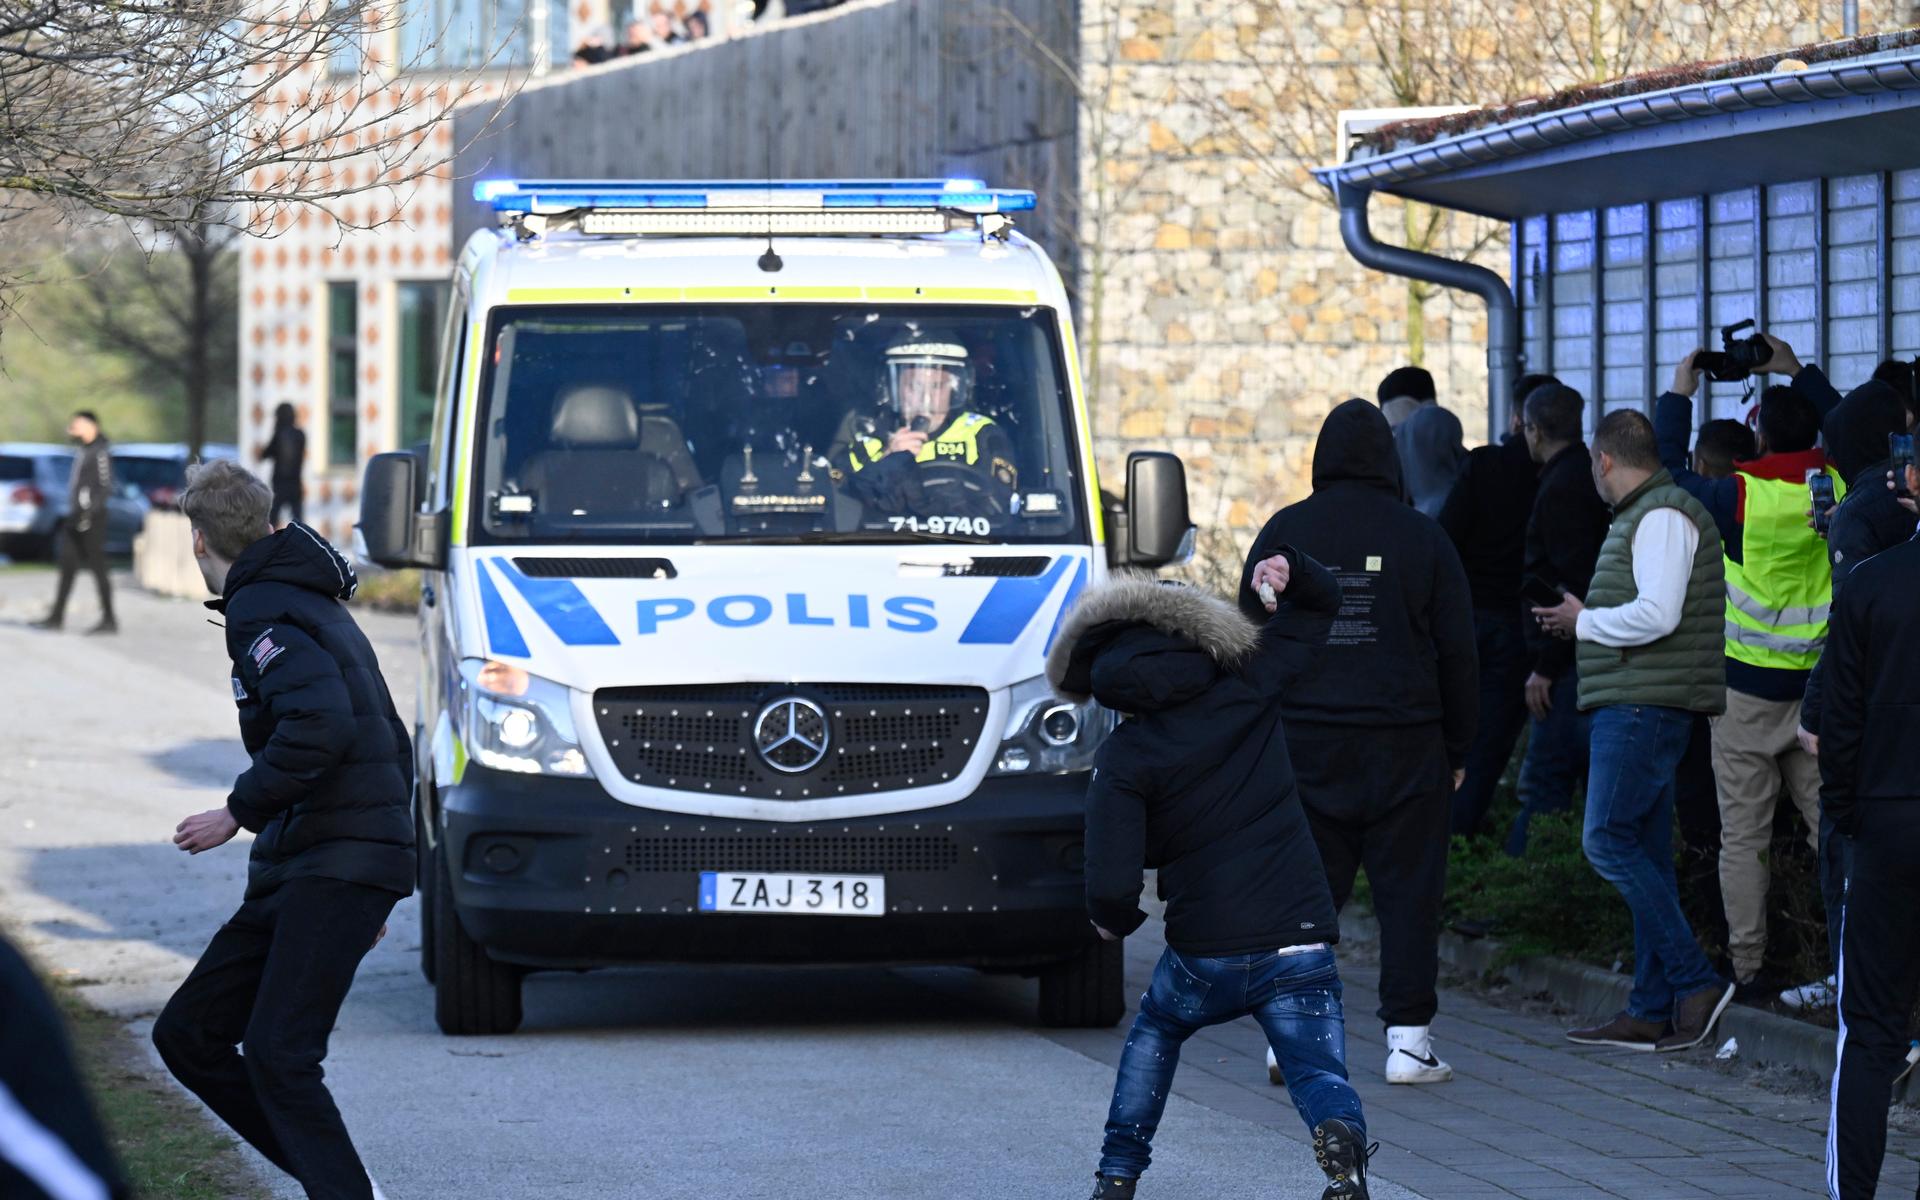 Motdemonstranter kastar sten mot en polisbuss vid Skånegården i Malmö där Rasmus Paludan, partiledare för det danska högerextrema partiet Stram kurs, höll en manifestation. Paludan hade fått tillstånd för en sammankomst i Landskrona, men polisen flyttade under lördagen sammankomsten.